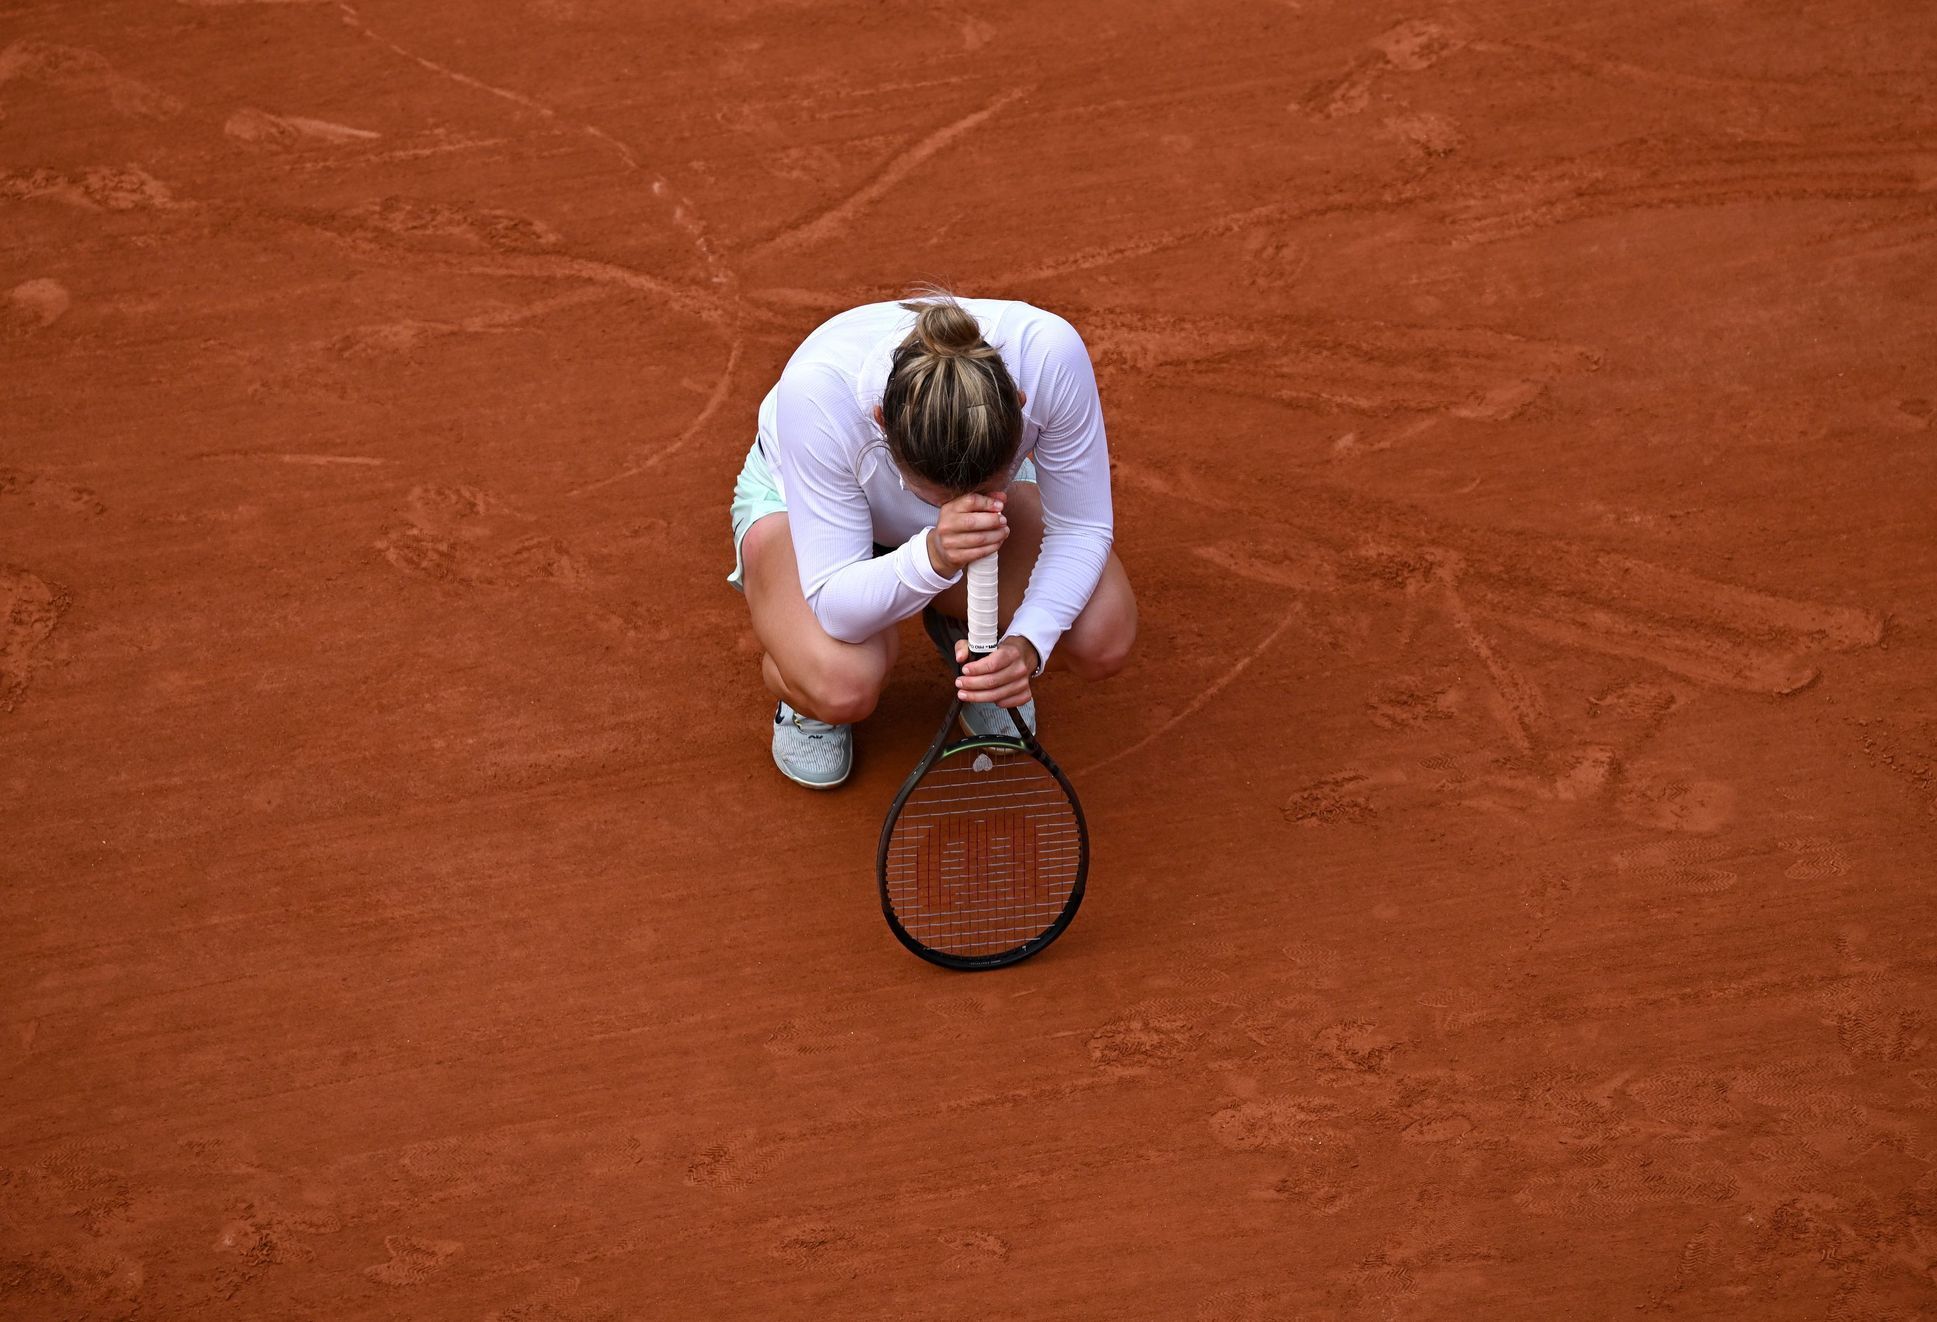 French Open 2022, 4. den (Simona Halepová)